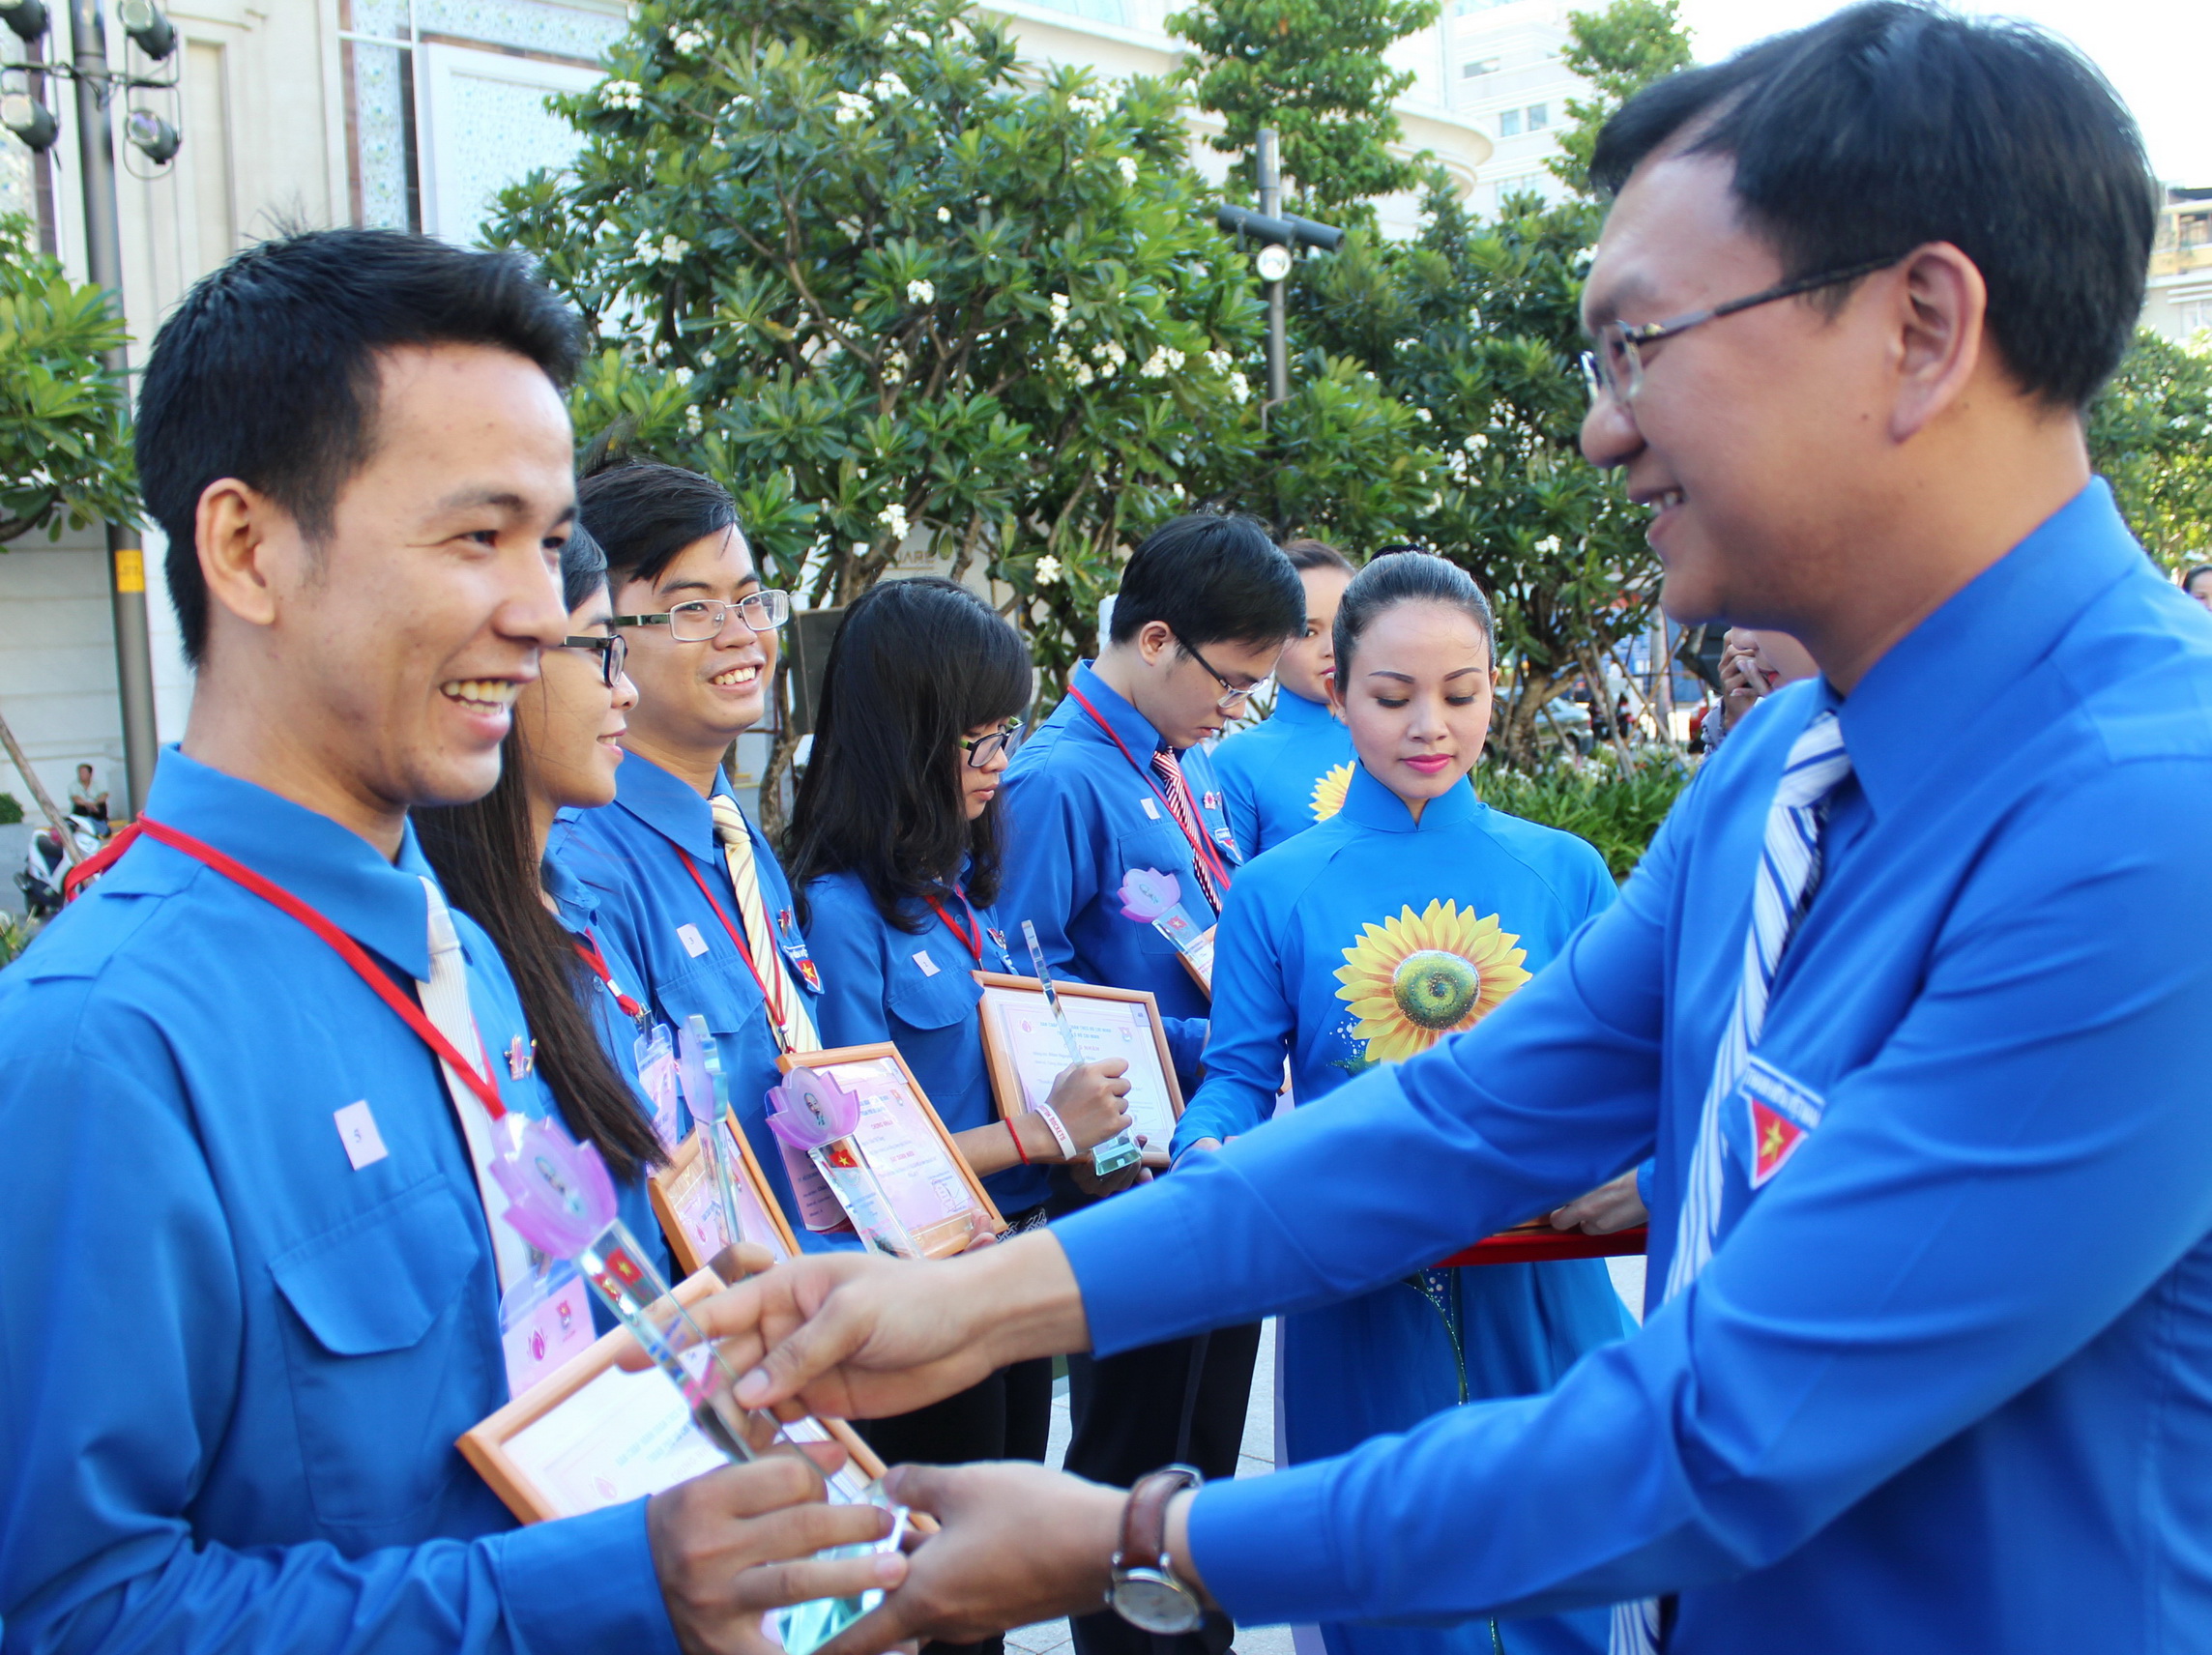 Phó bí thư thường trực Thành đoàn Lâm Đình Thắng (bìa phải) trao giấy chứng nhận thanh niên tiên tiến cho đại biểu - Ảnh: Q.L.